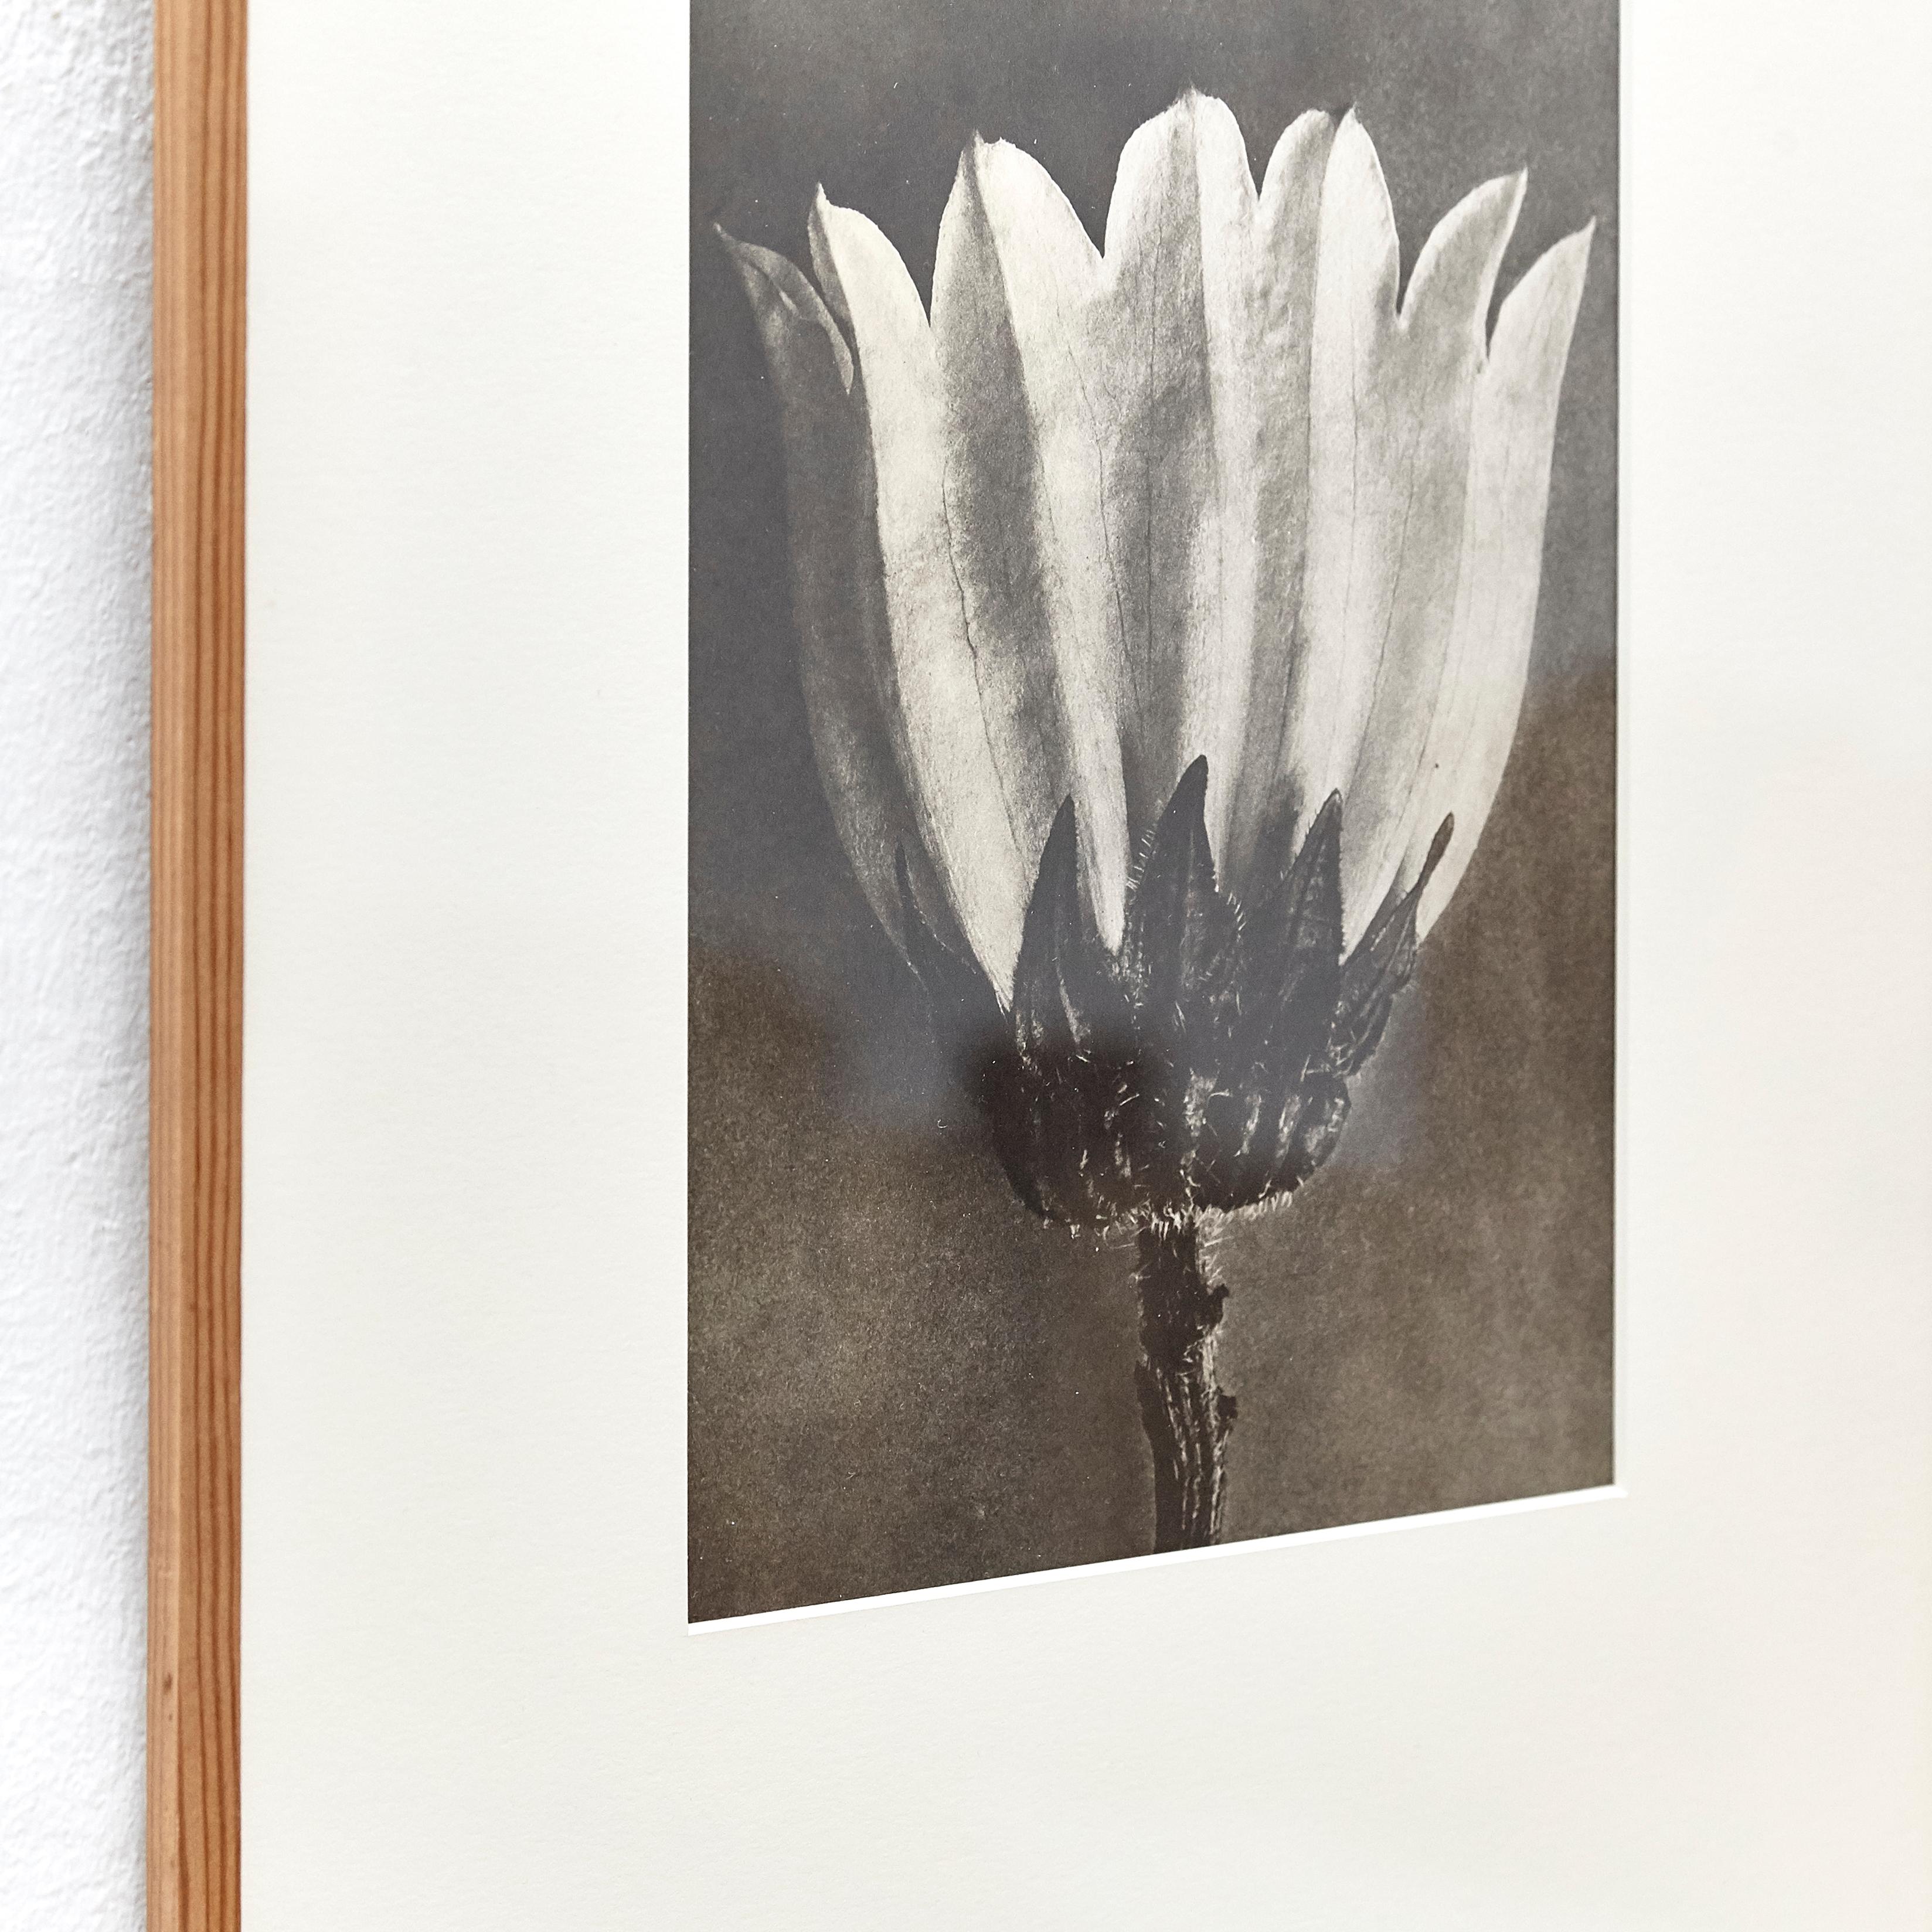 Spanish Karl Blossfeldt Black White Flower Photogravure Botanic Photography, 1942